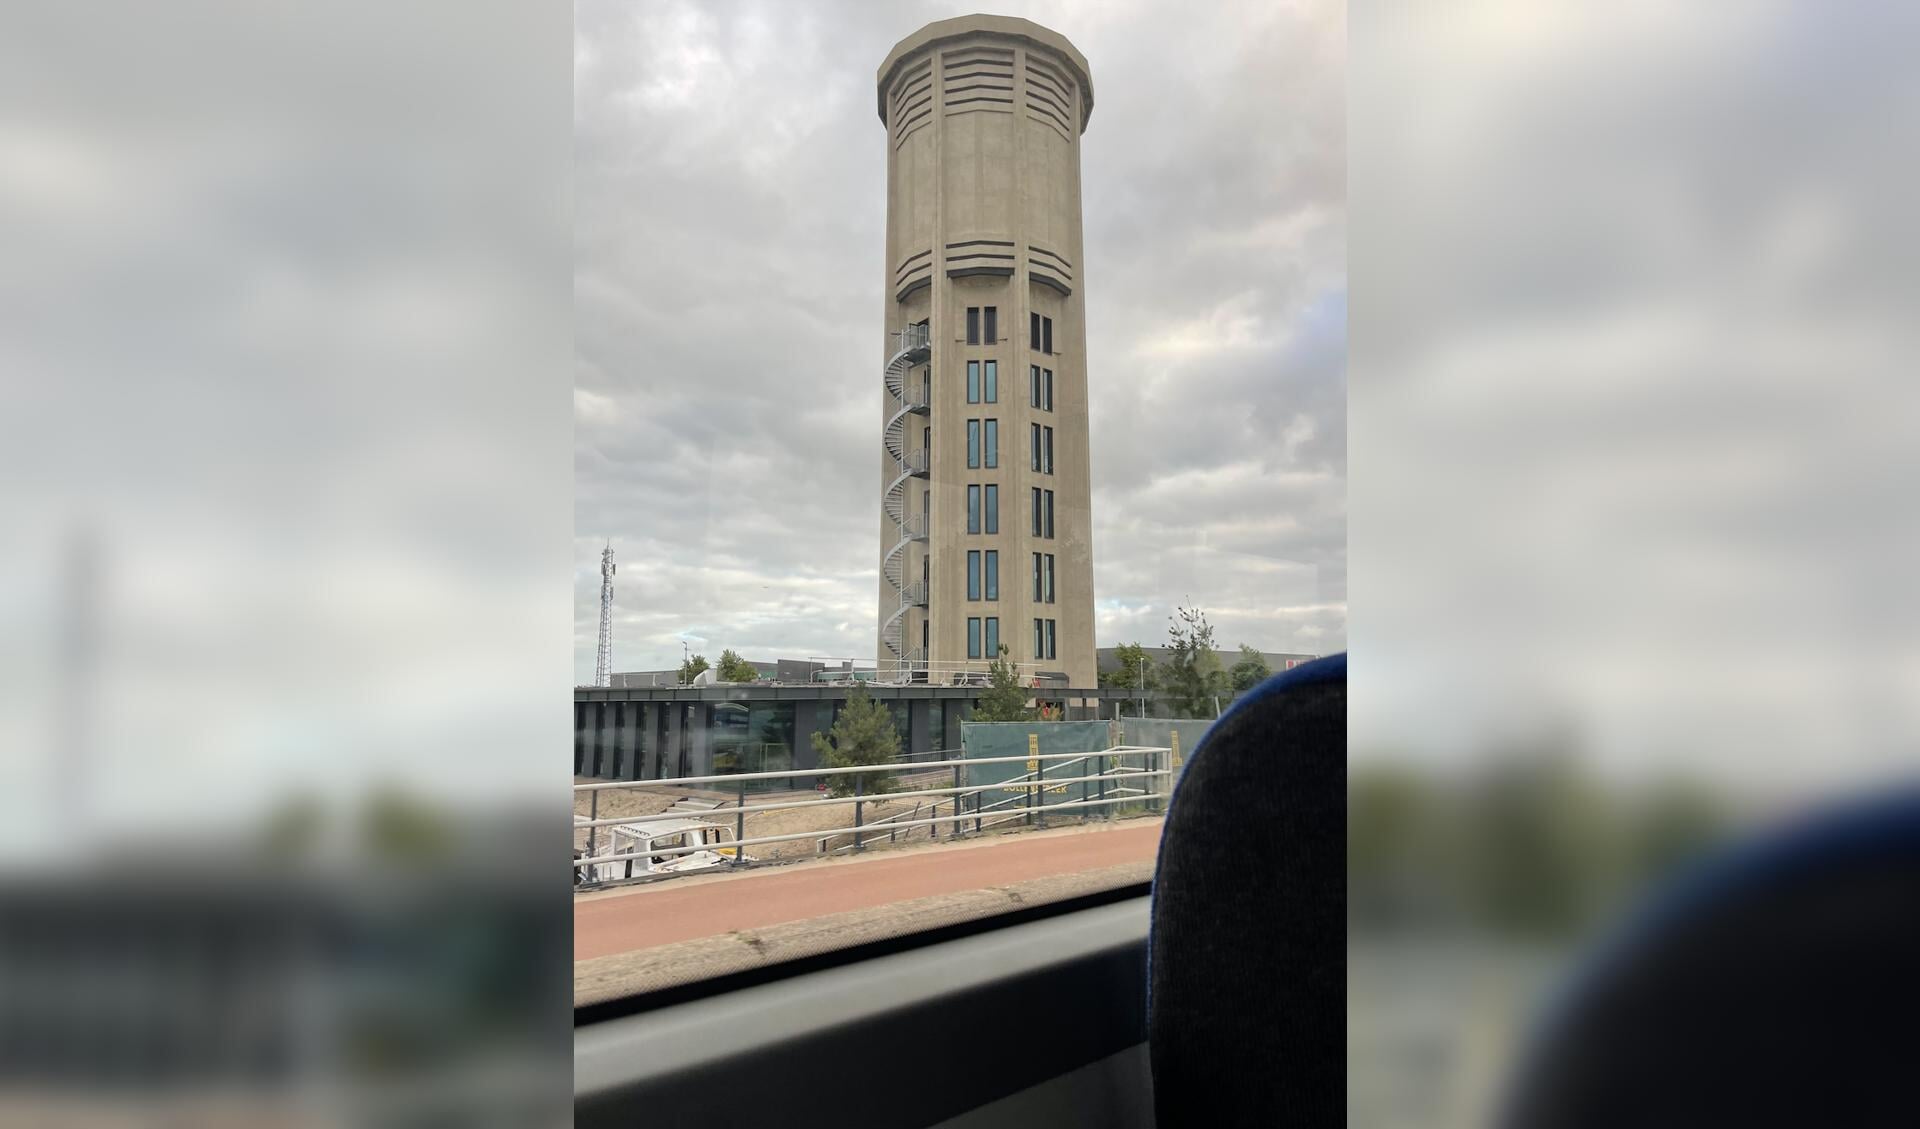 De watertoren, gezien vanuit de bus.